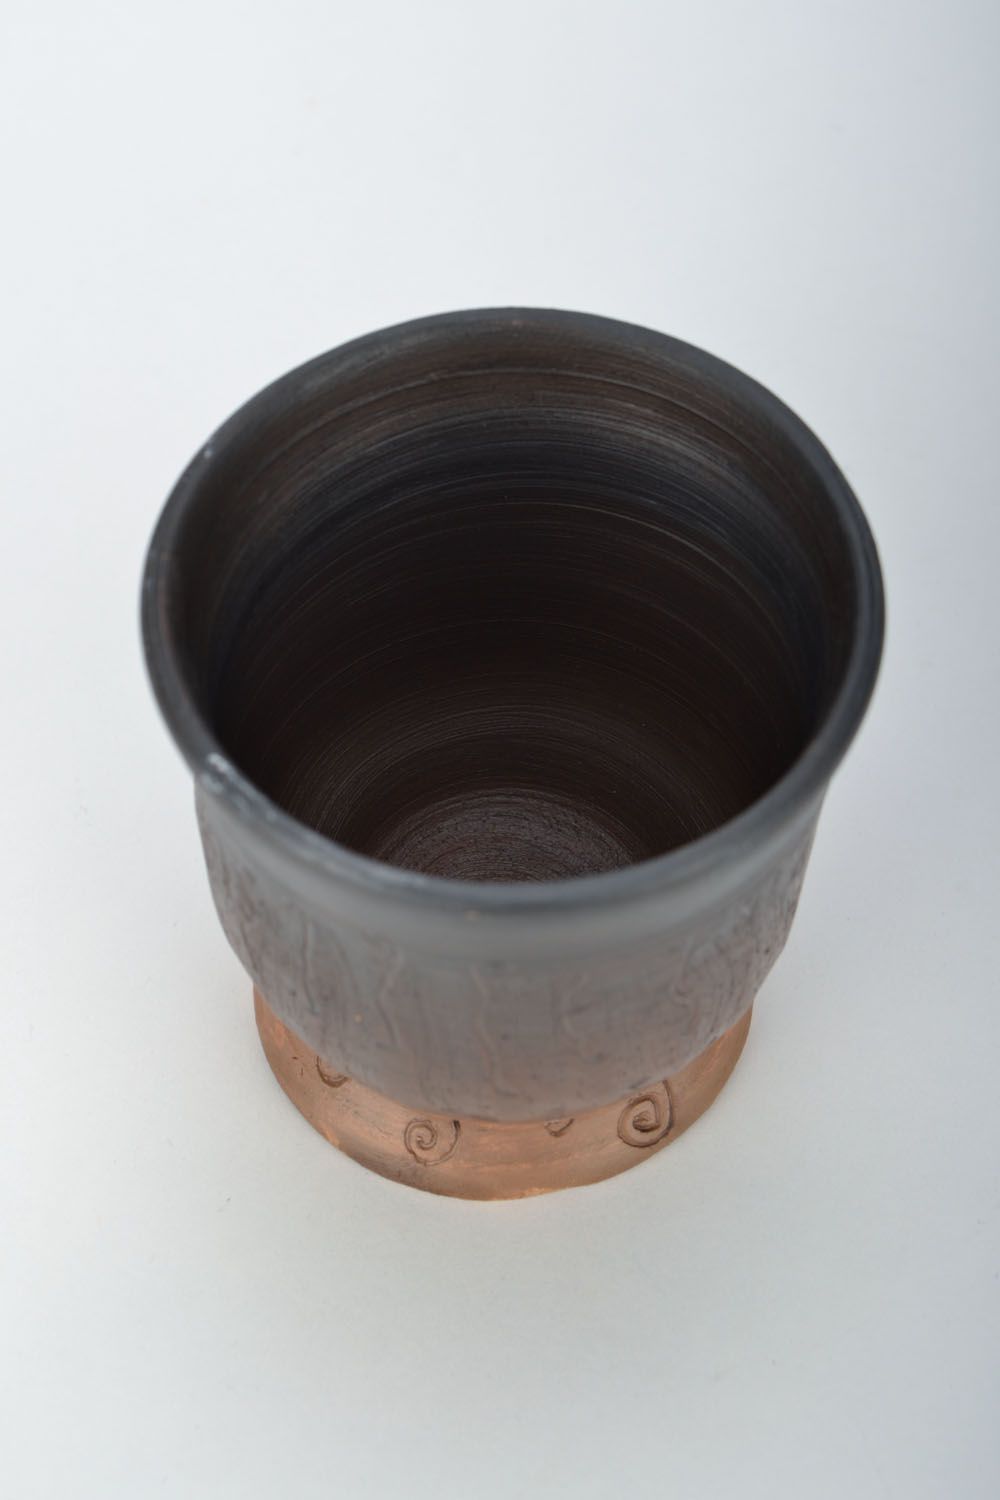 Clay drinking mug with no handle in dark brown color 0,34 lb photo 5